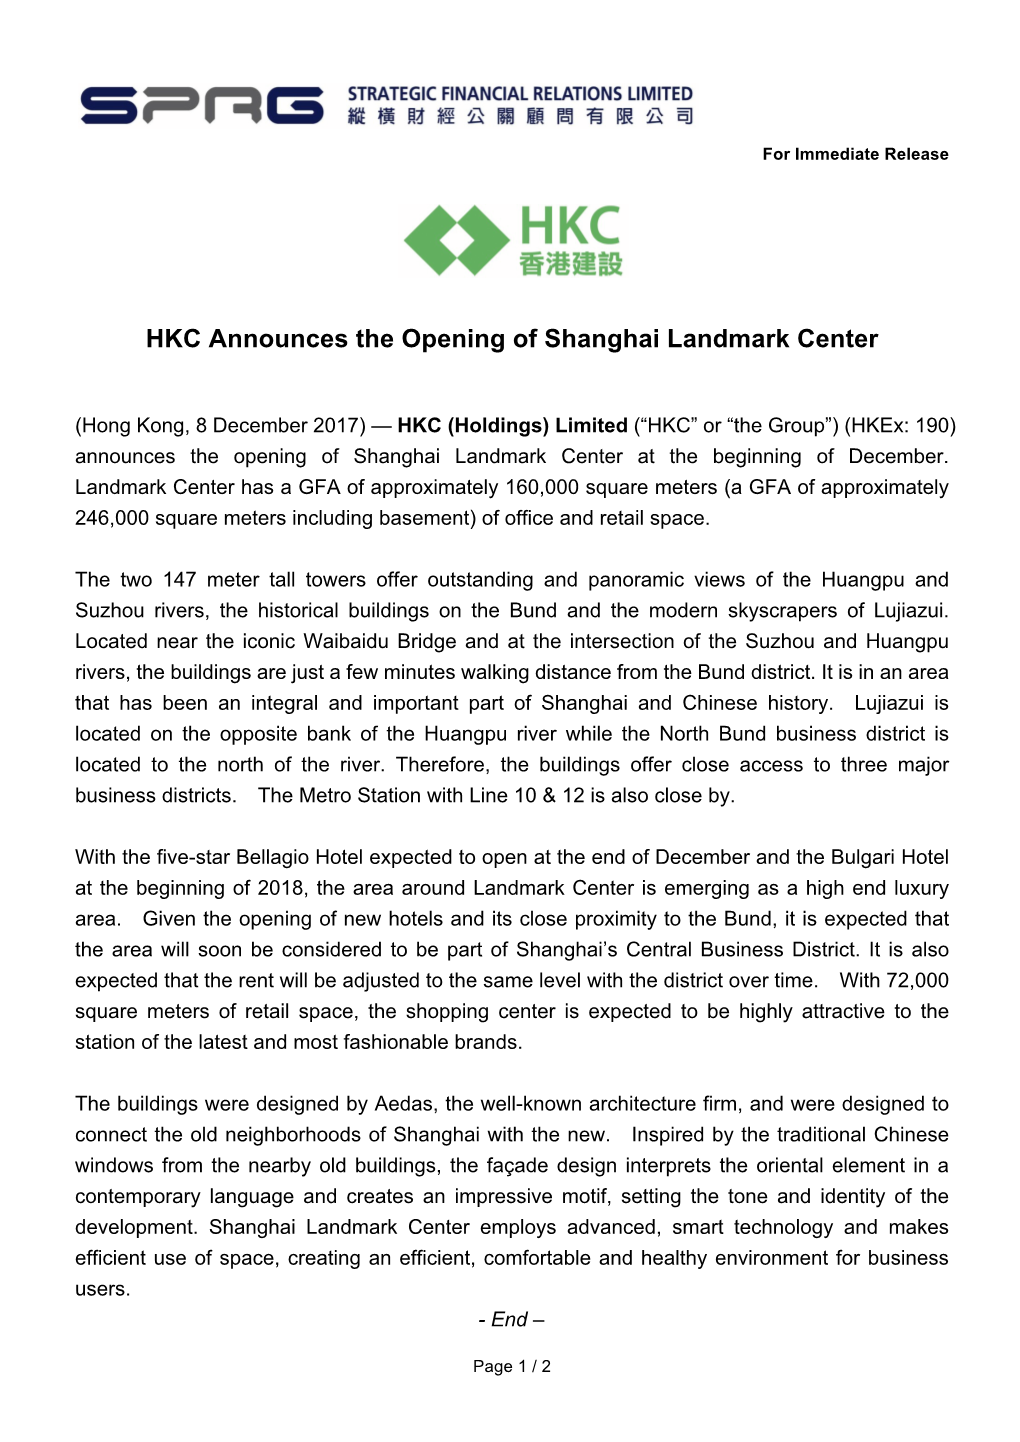 HKC Announces the Opening of Shanghai Landmark Center